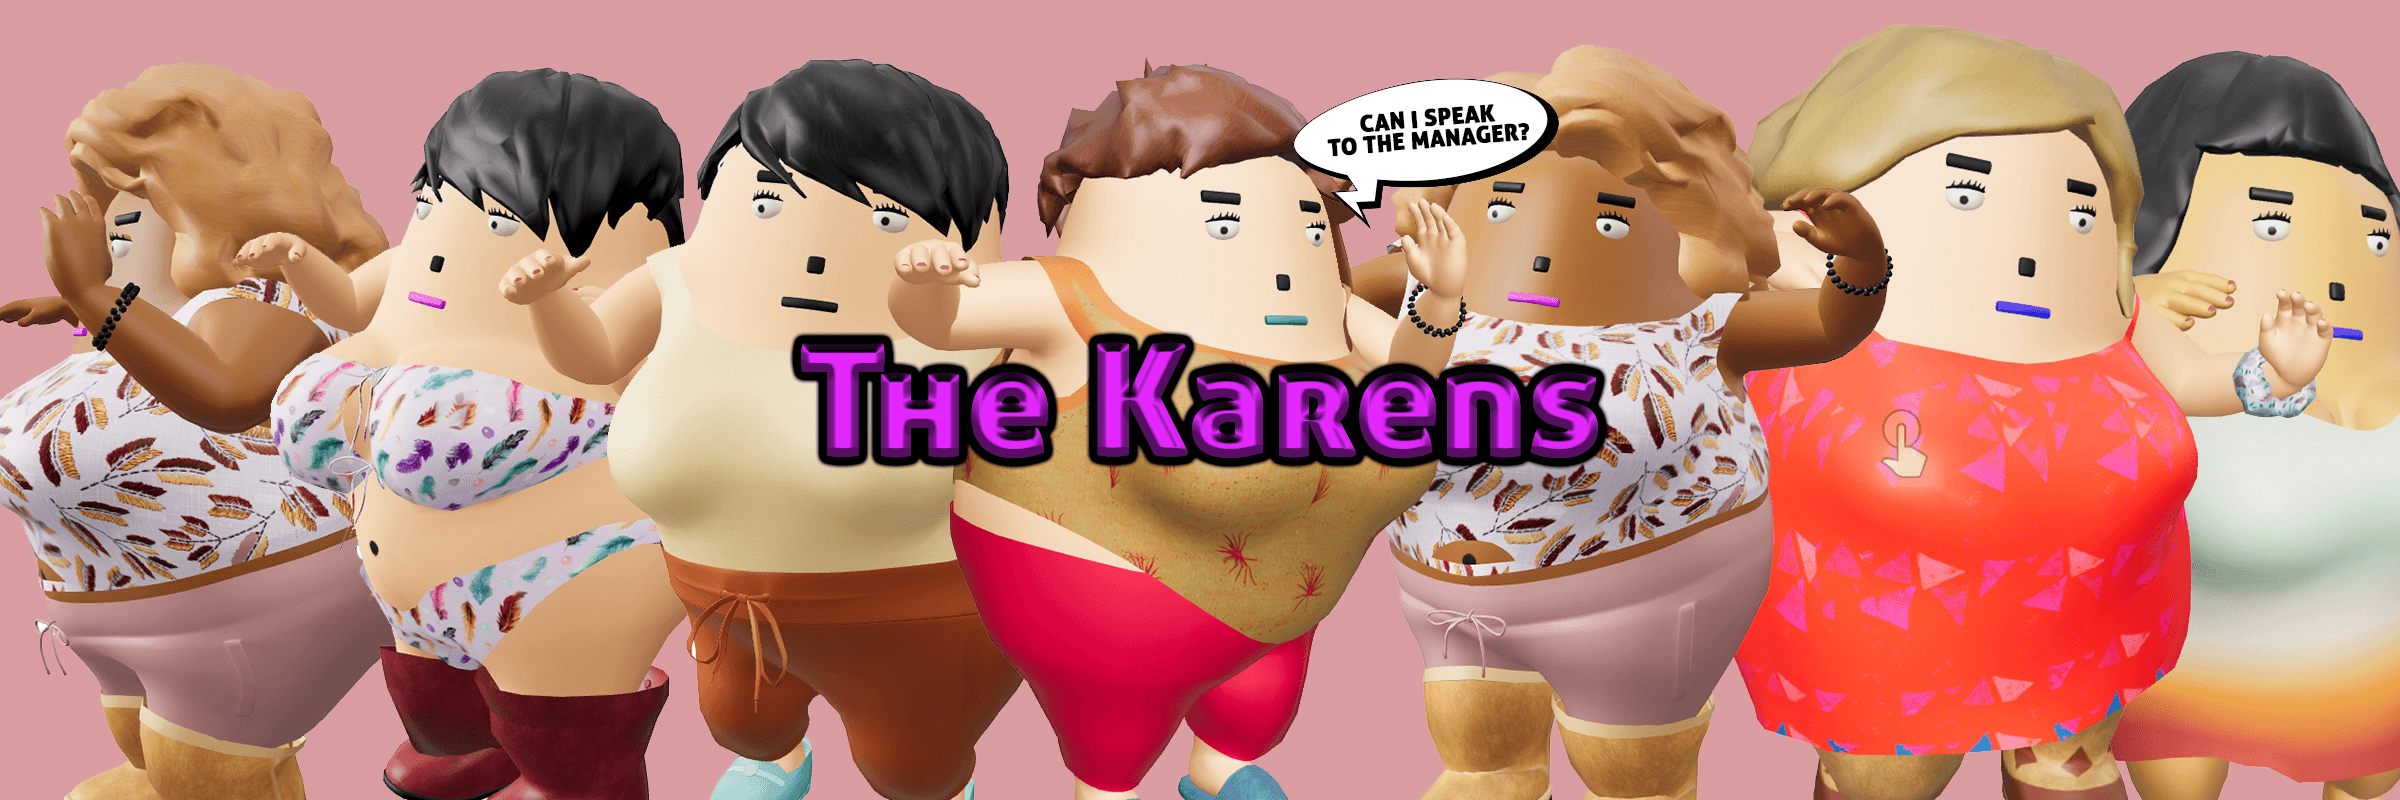 TheKarens